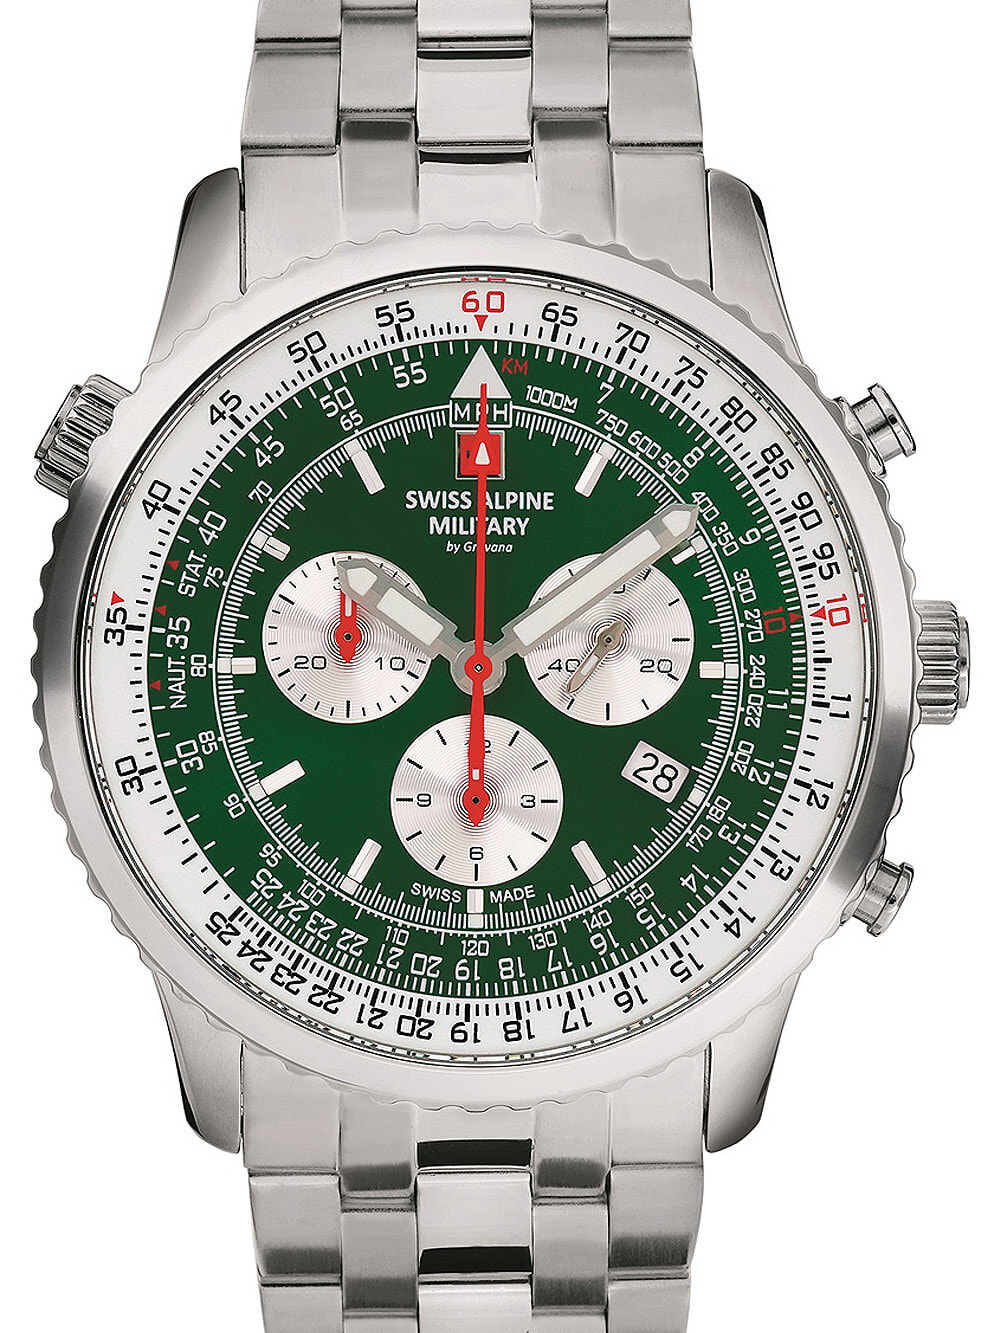 Мужские наручные часы с серебряным браслетом Swiss Alpine Military 7078.9134 chrono mens 45mm 10ATM